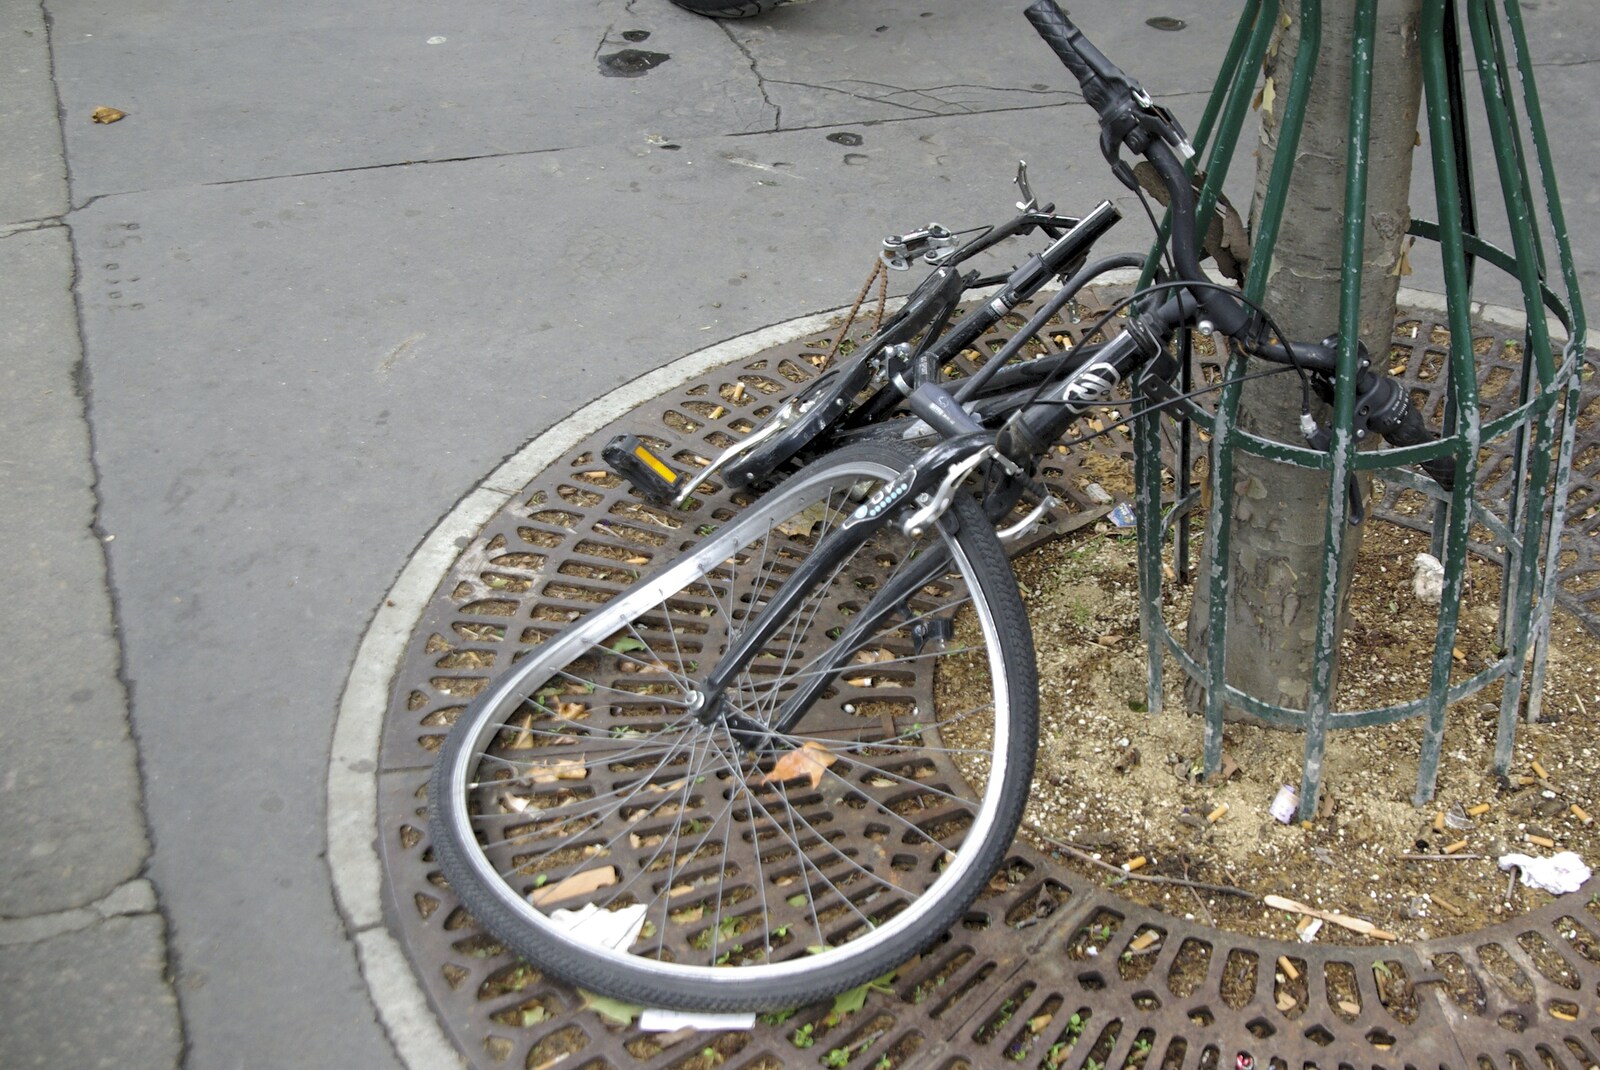 Genesis Live at Parc Des Princes, Paris, France - 30th June 2007: A mangled bike